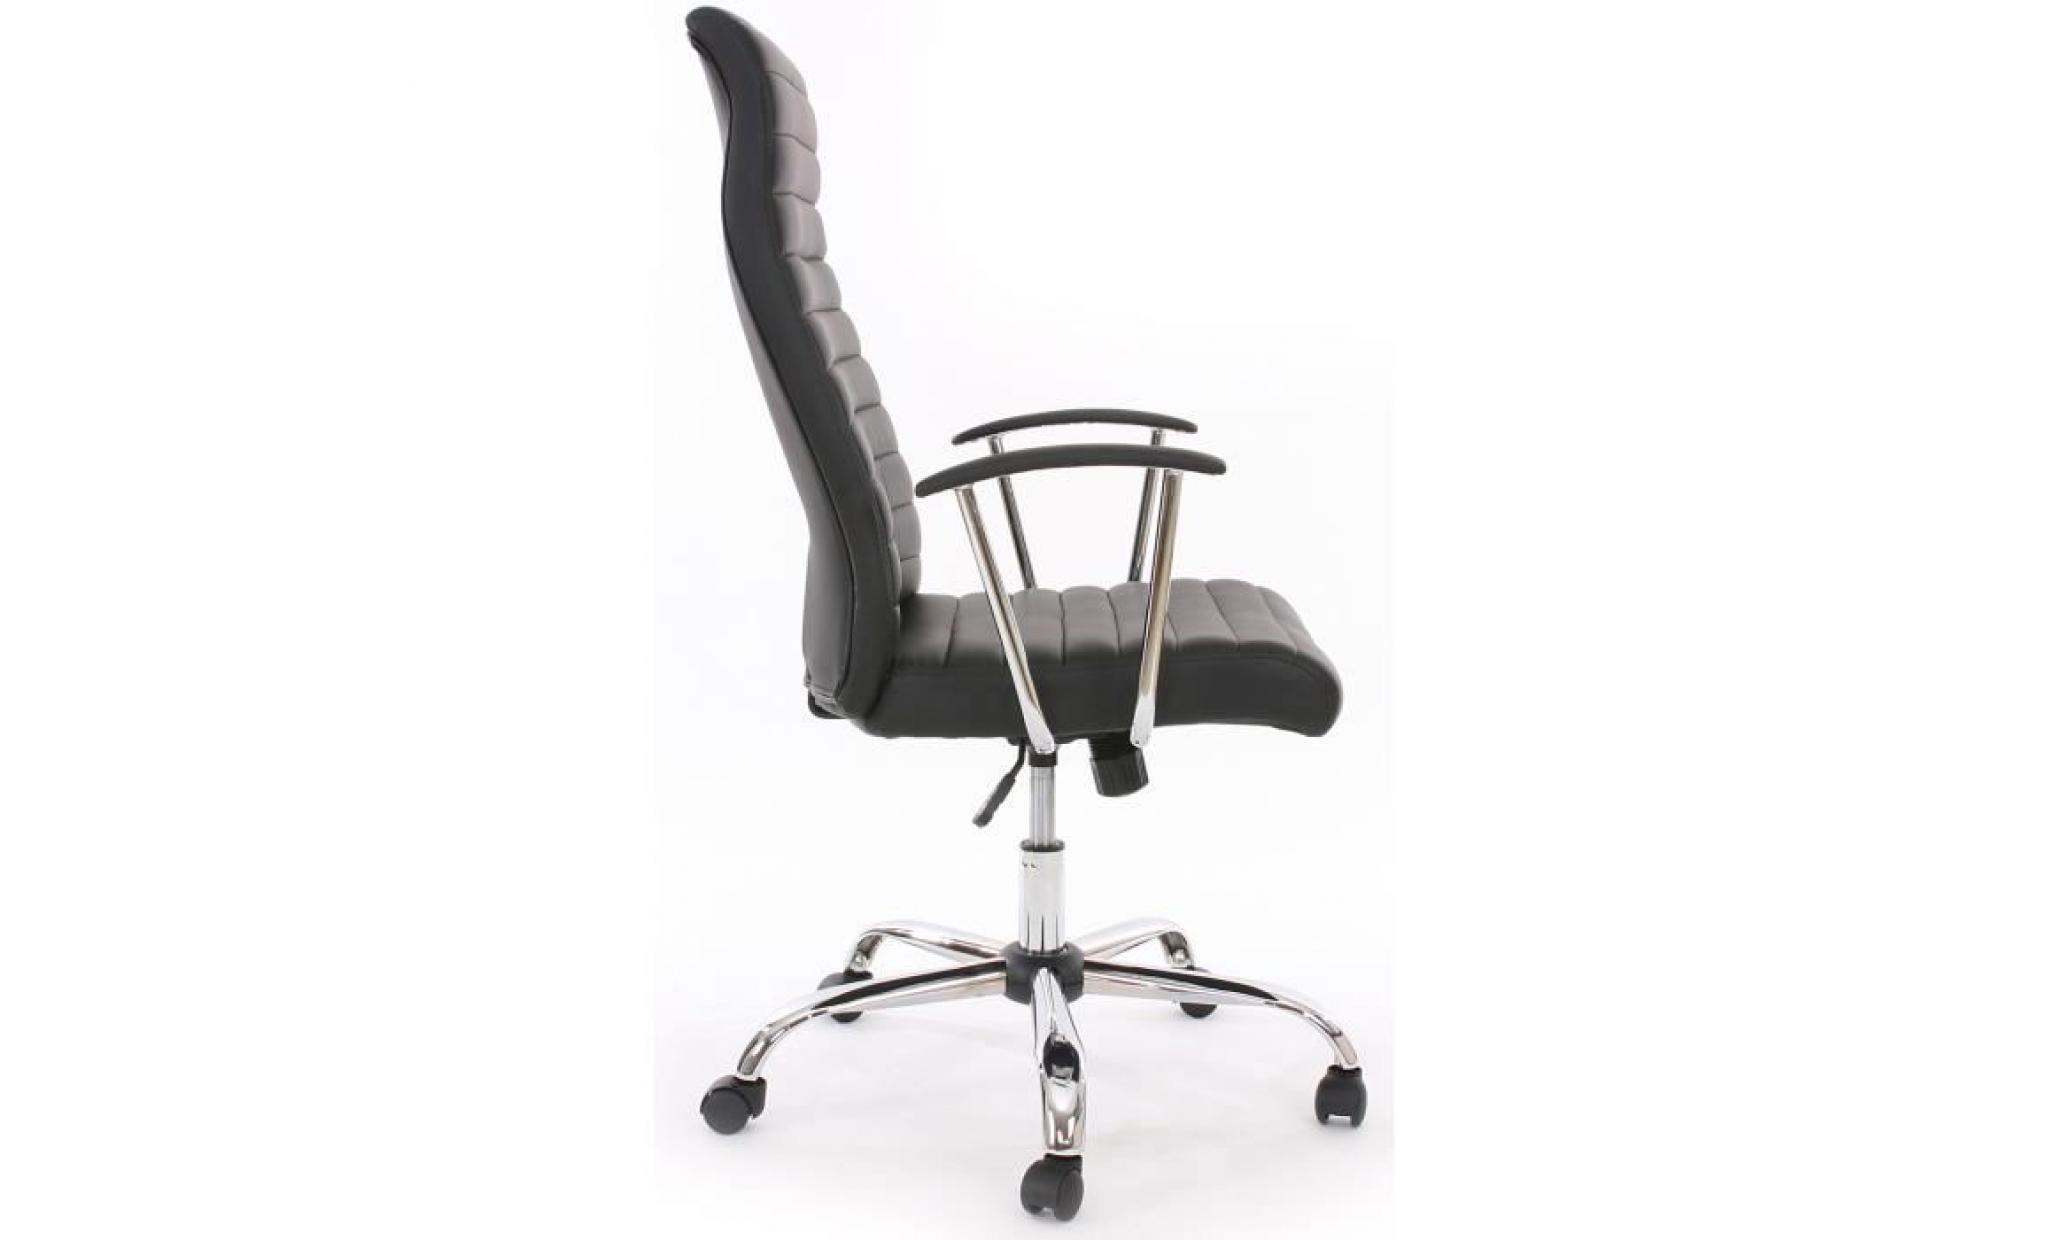 Chaise de Bureau pivotante Cagliari, design ergonomique, coloris noir pas cher